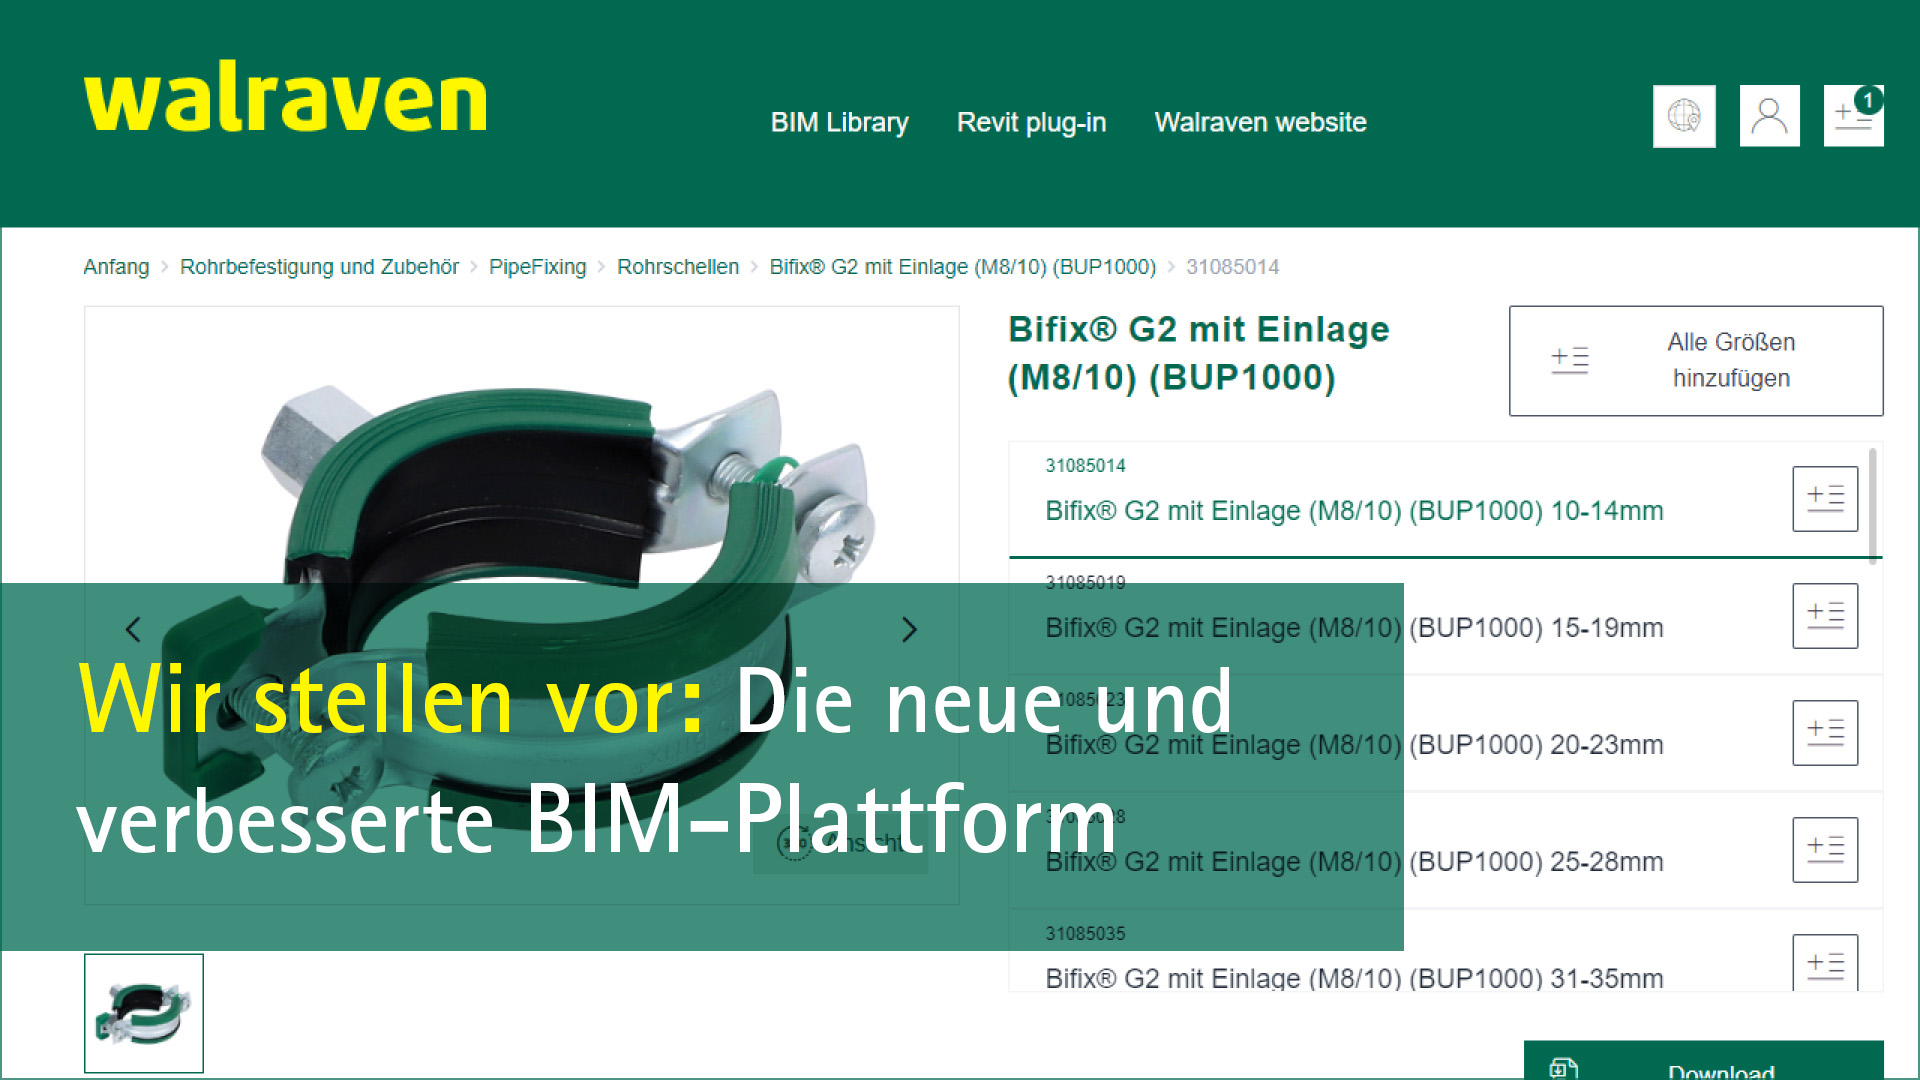 Screenshot der neuen Walraven-BIM-Plattform. Davor der Text in gelber Schrift "Wir stellen vor:" und in weißer Schrift "Die neue und verbesserte BIM-Plattform" auf grünem Grund.